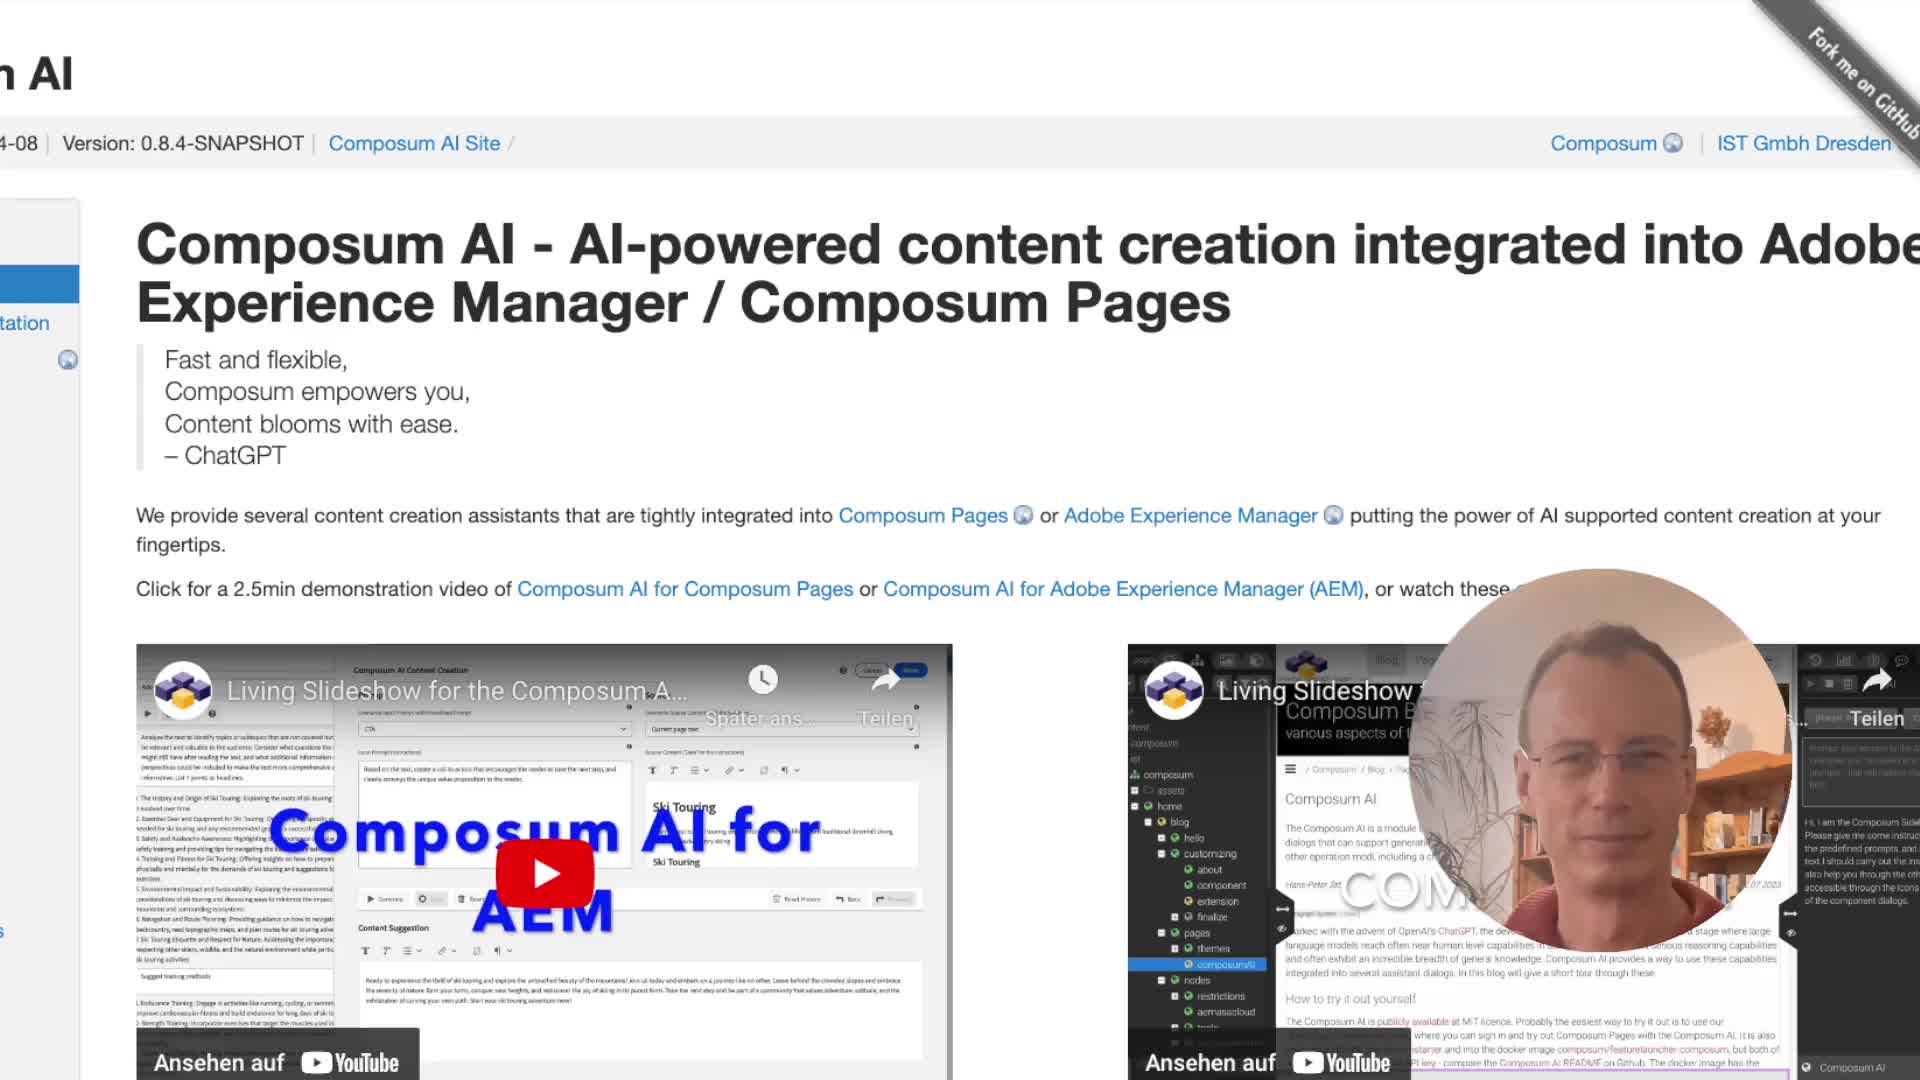 Composum AI for AEM Demo